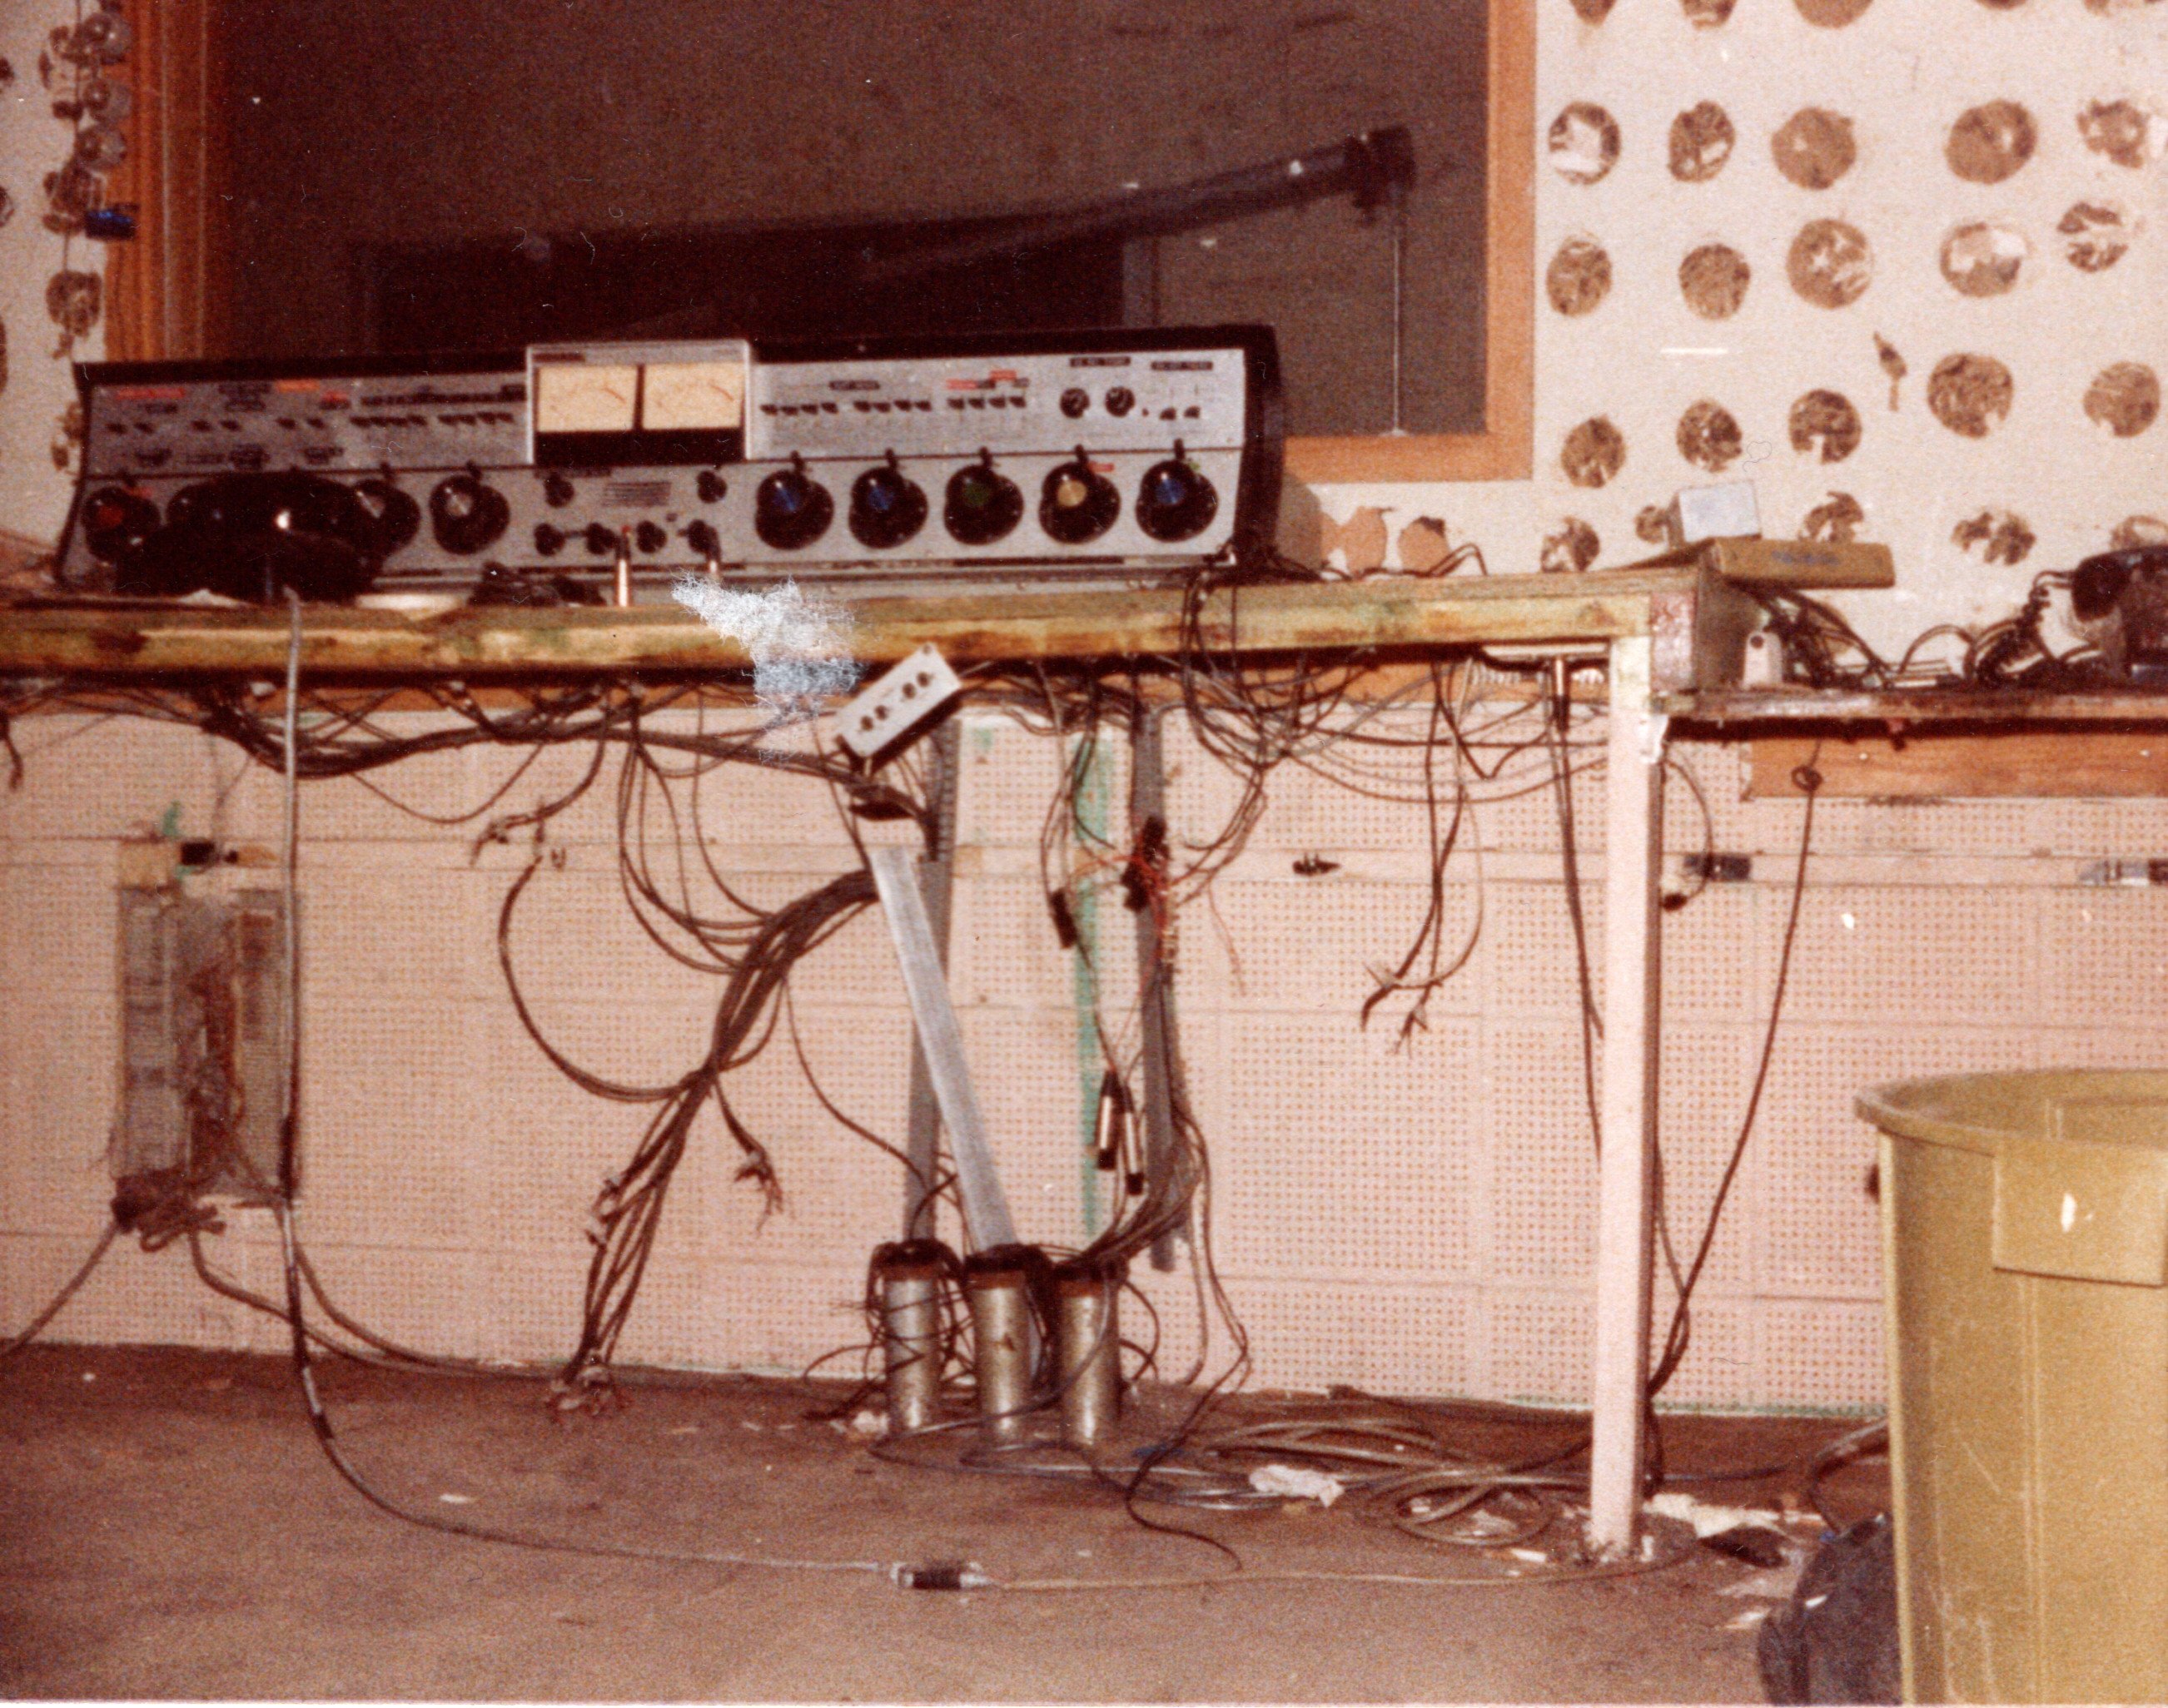 1983 - The rebuild of FM